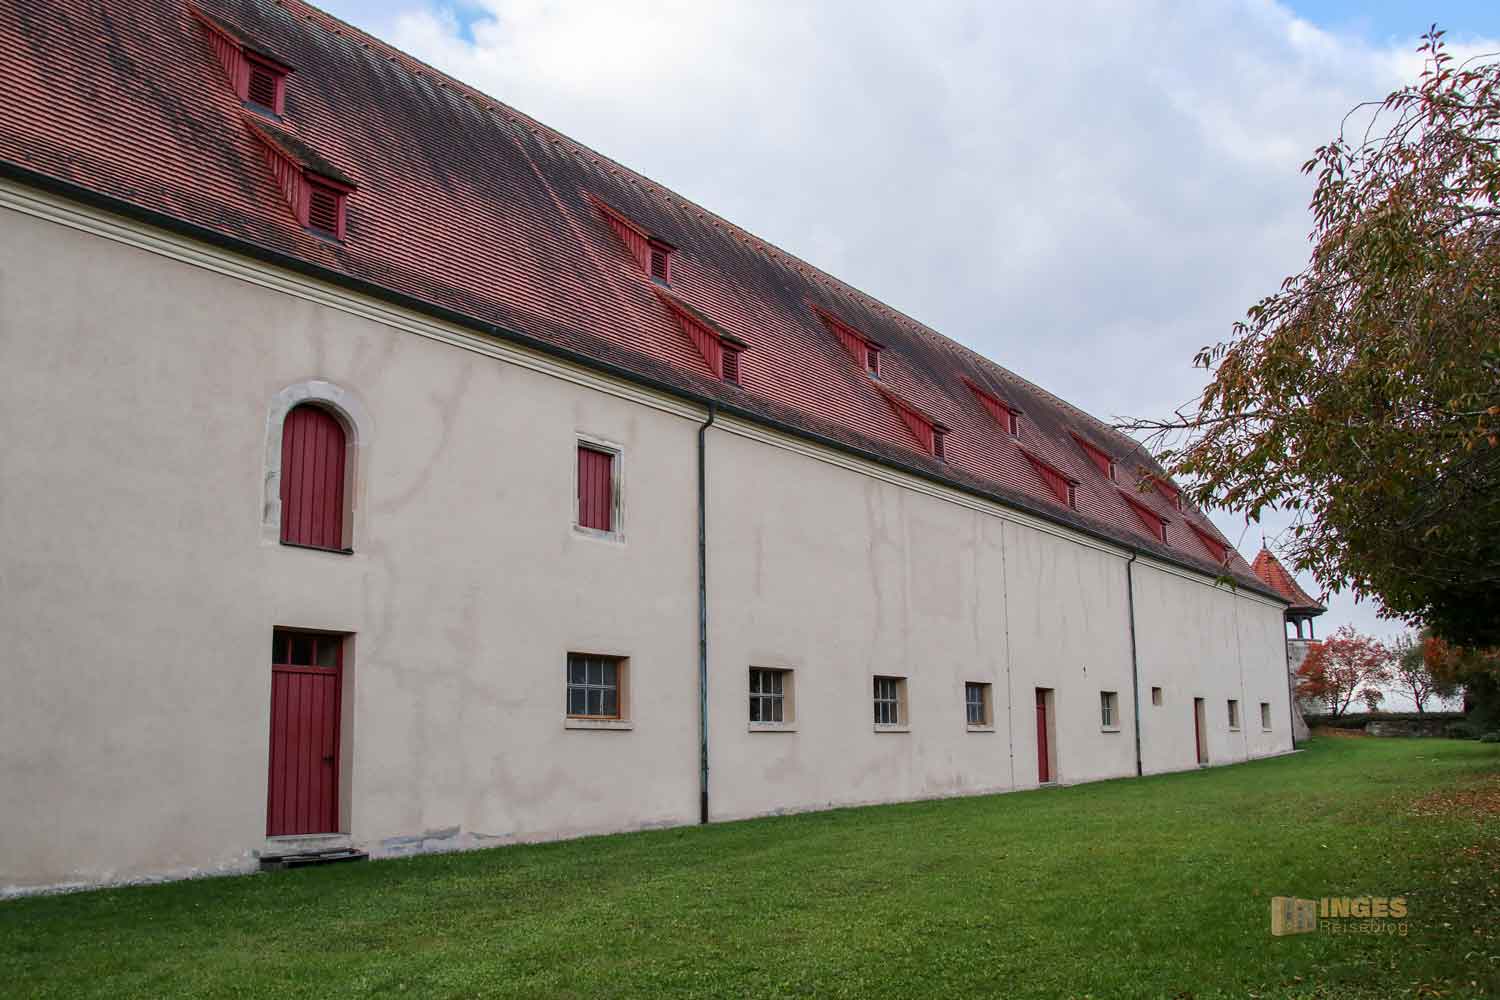 Stallung Schloss ob Ellwangen